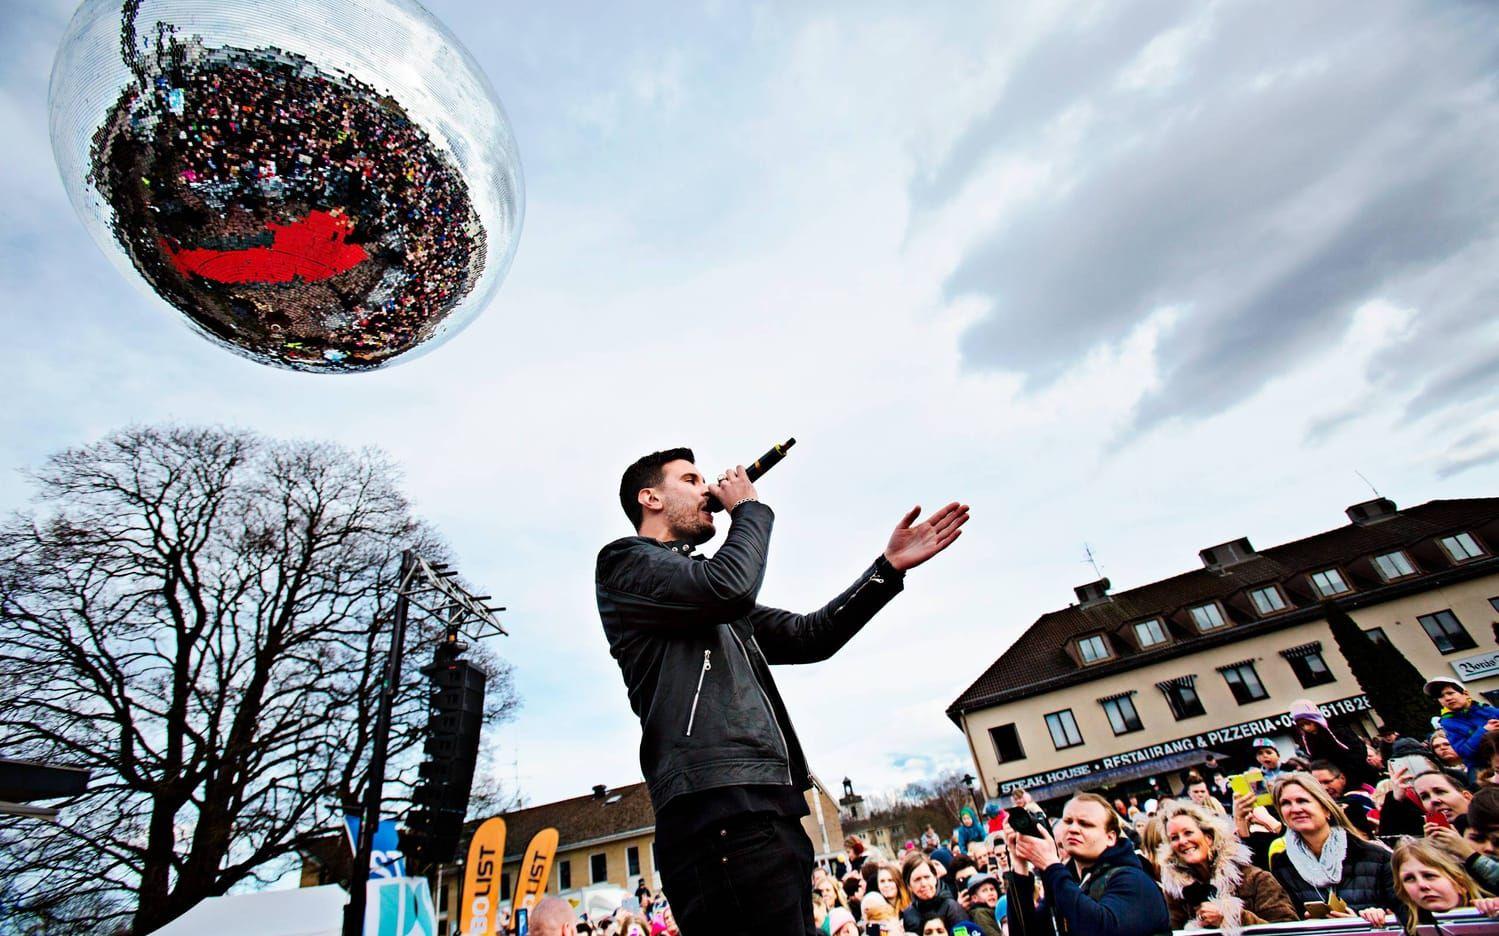 Hemma på torget. Svenljungas musikambassadör Robin Bengtsson sjöng för fansen på födelseorten.  Bild: Tomas Ohlsson.